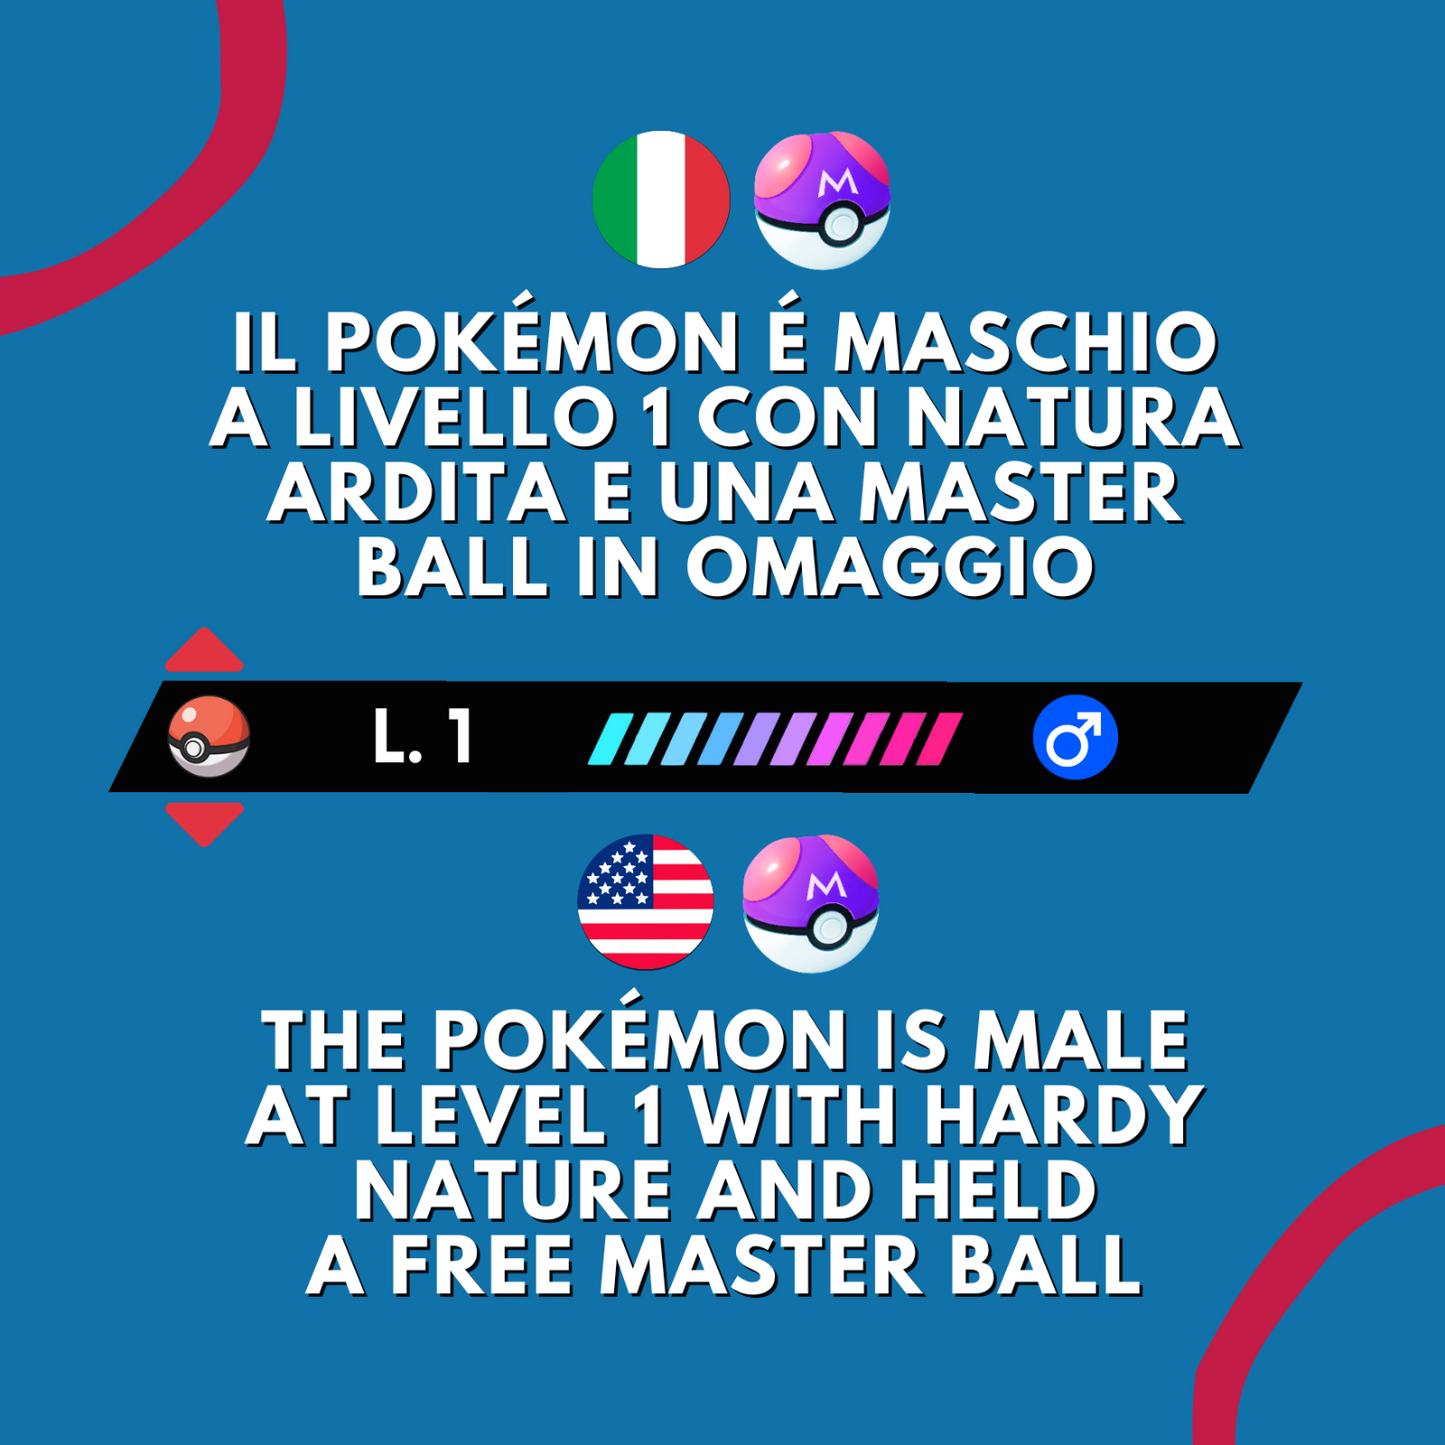 Baltoy Shiny o Non 6 IV e Master Ball Legit Pokemon Spada Scudo Sword Shield